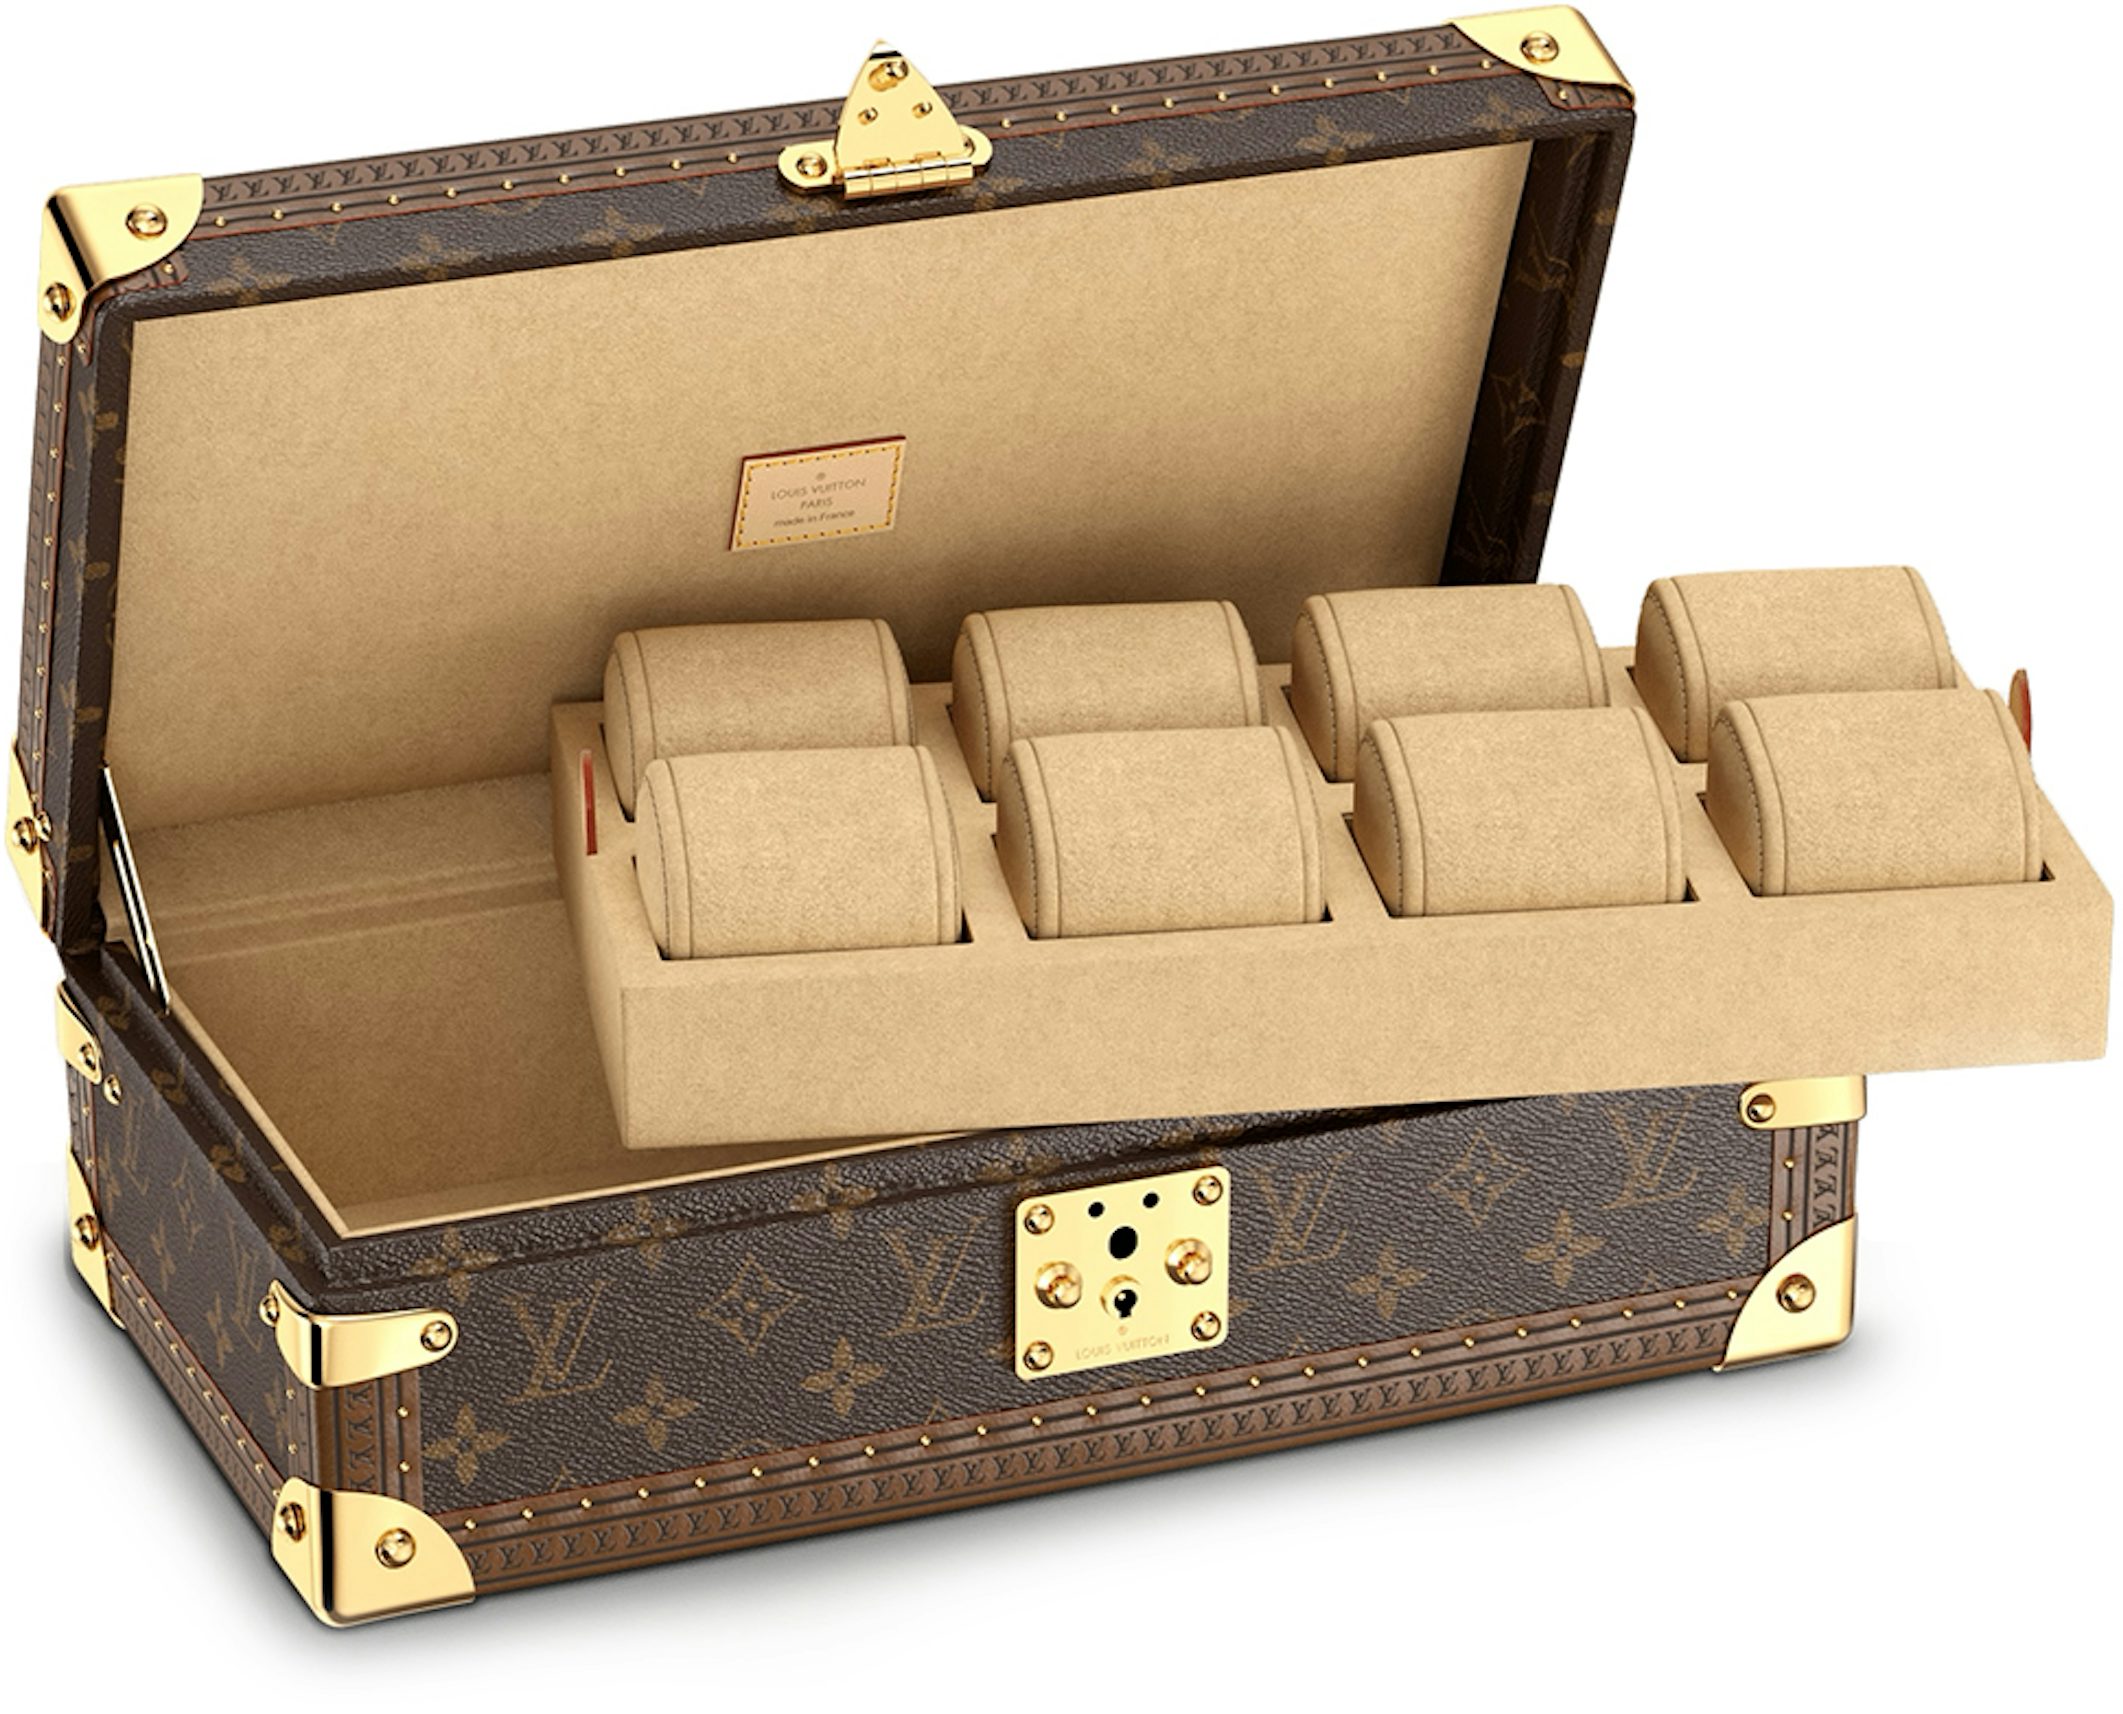 Louis Vuitton Cannes Micro Case